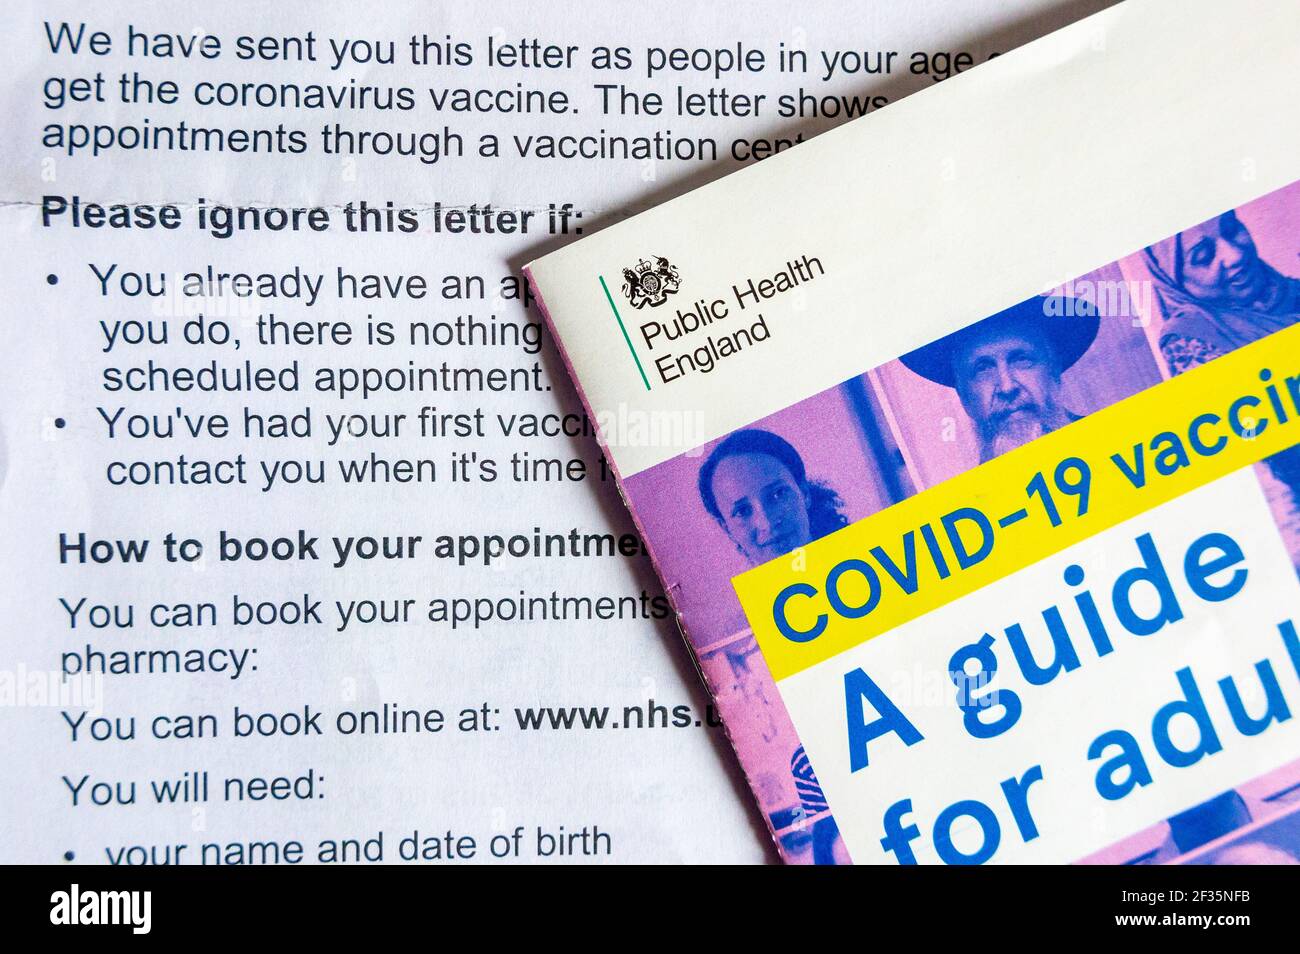 Dépliant vaccin Covid-19 UN guide pour adultes envoyé par le public Santé Angleterre avec une lettre expliquant comment réserver la vaccination du coronavirus En mars 2021 Banque D'Images